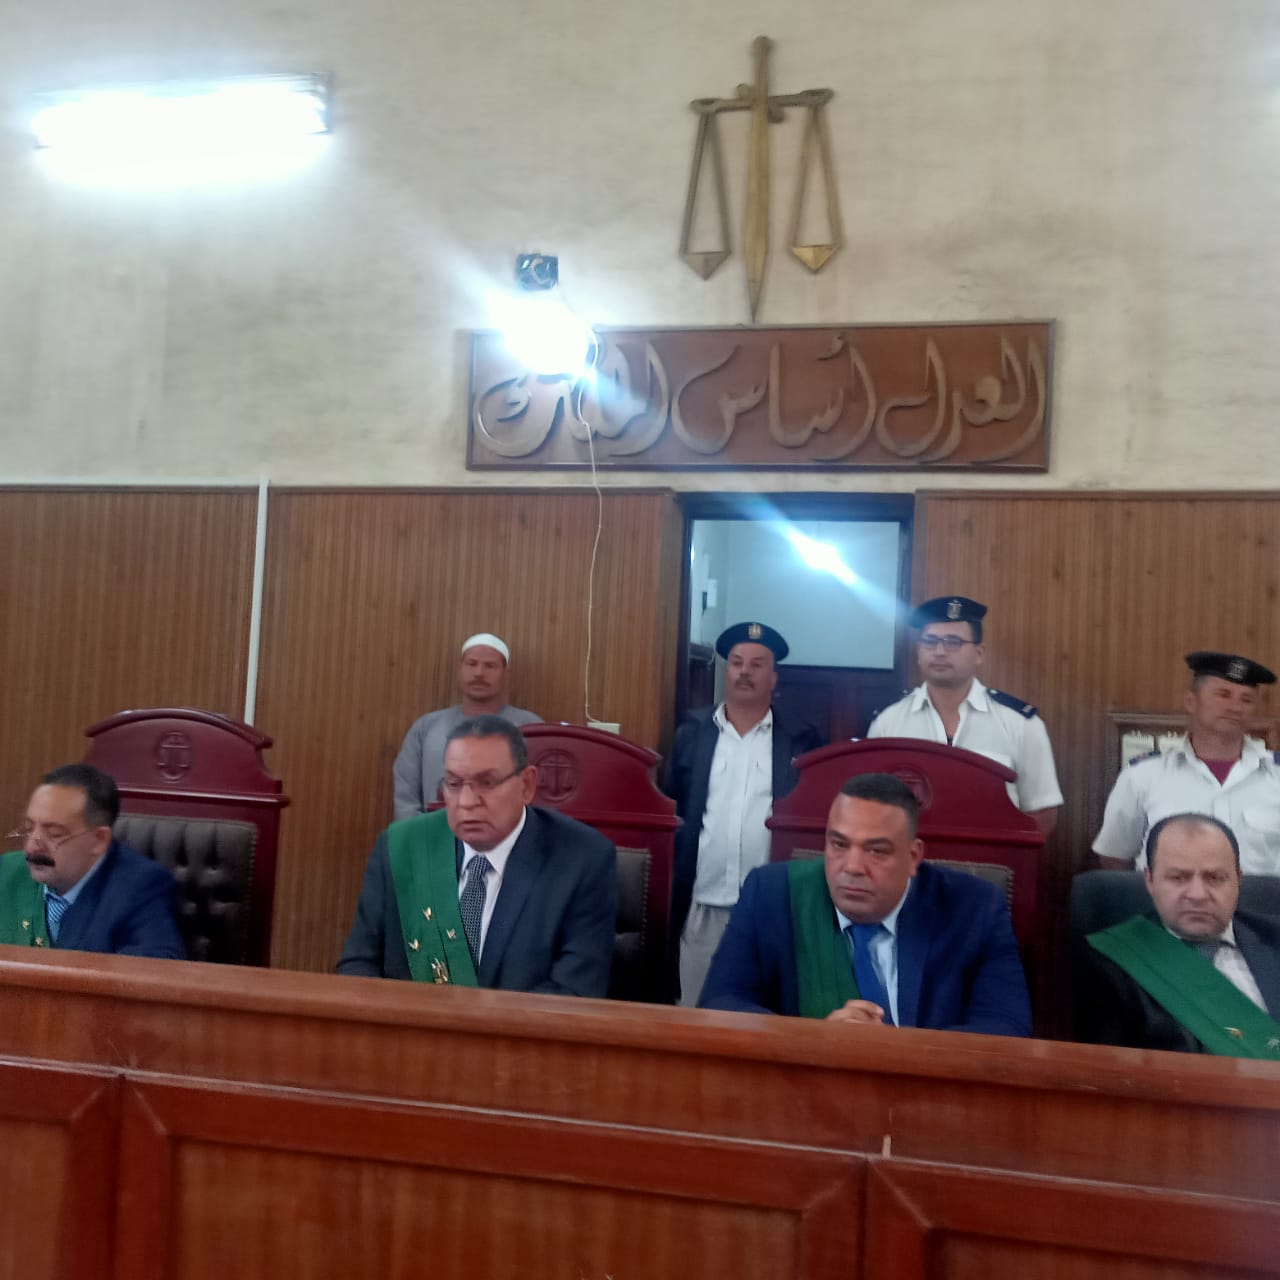 هيئة المحكمة اثناء محاكمة قاتل روان الحسيني بمحكمة جنايات فوه